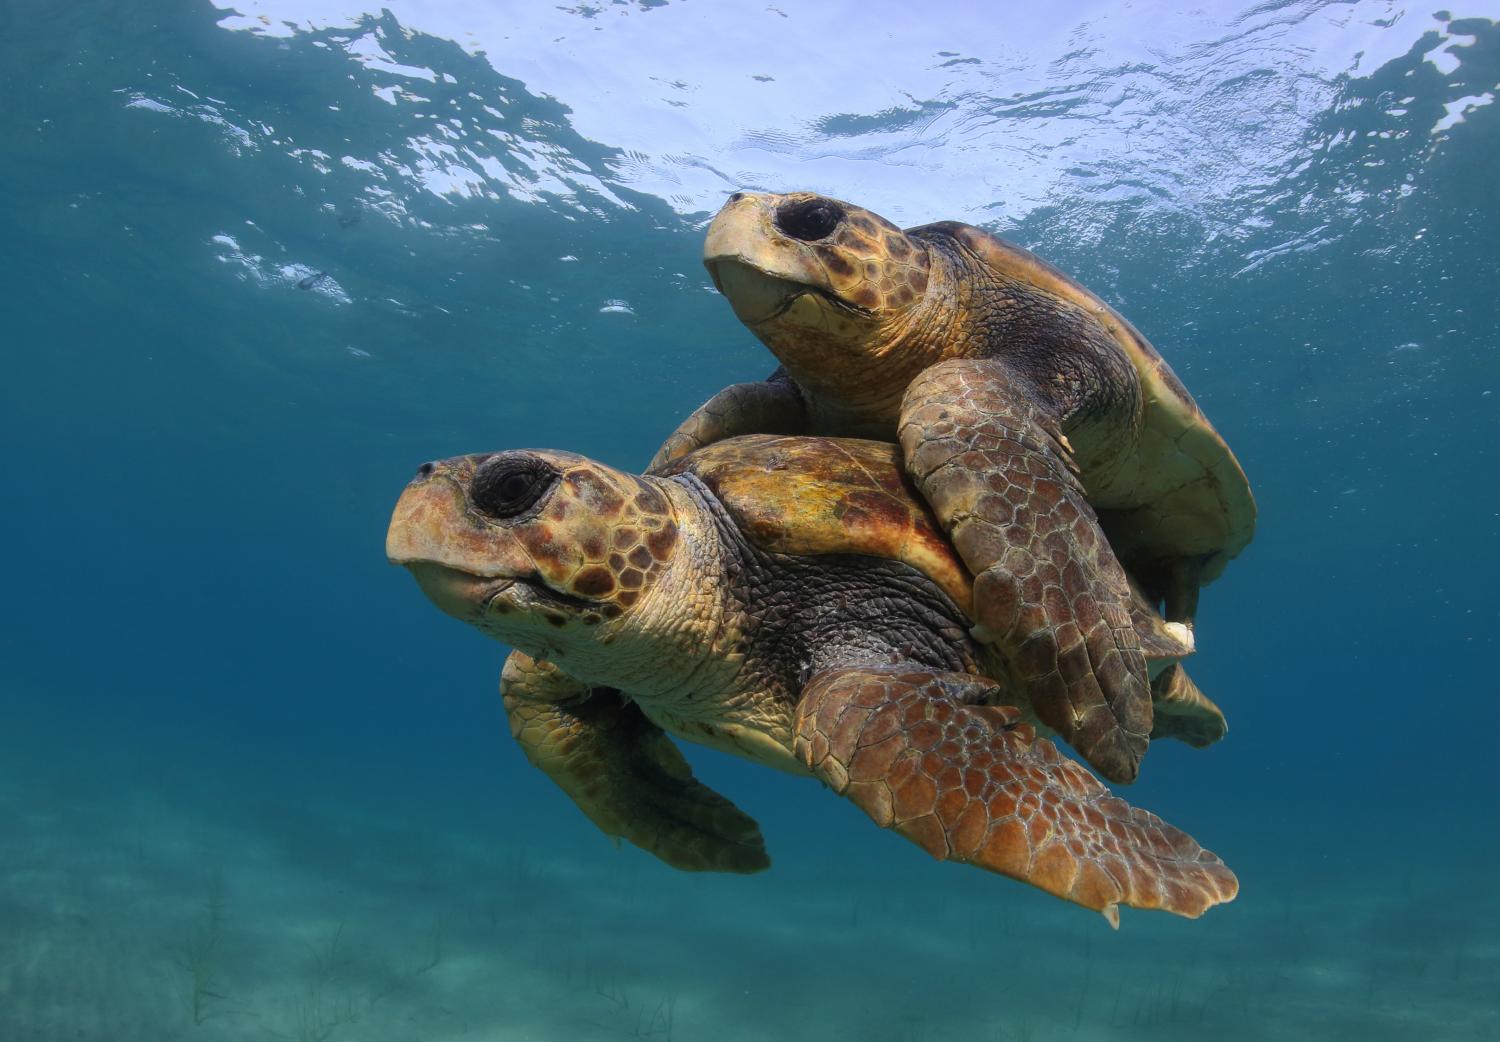 Warming temperatures threaten sea turtles.